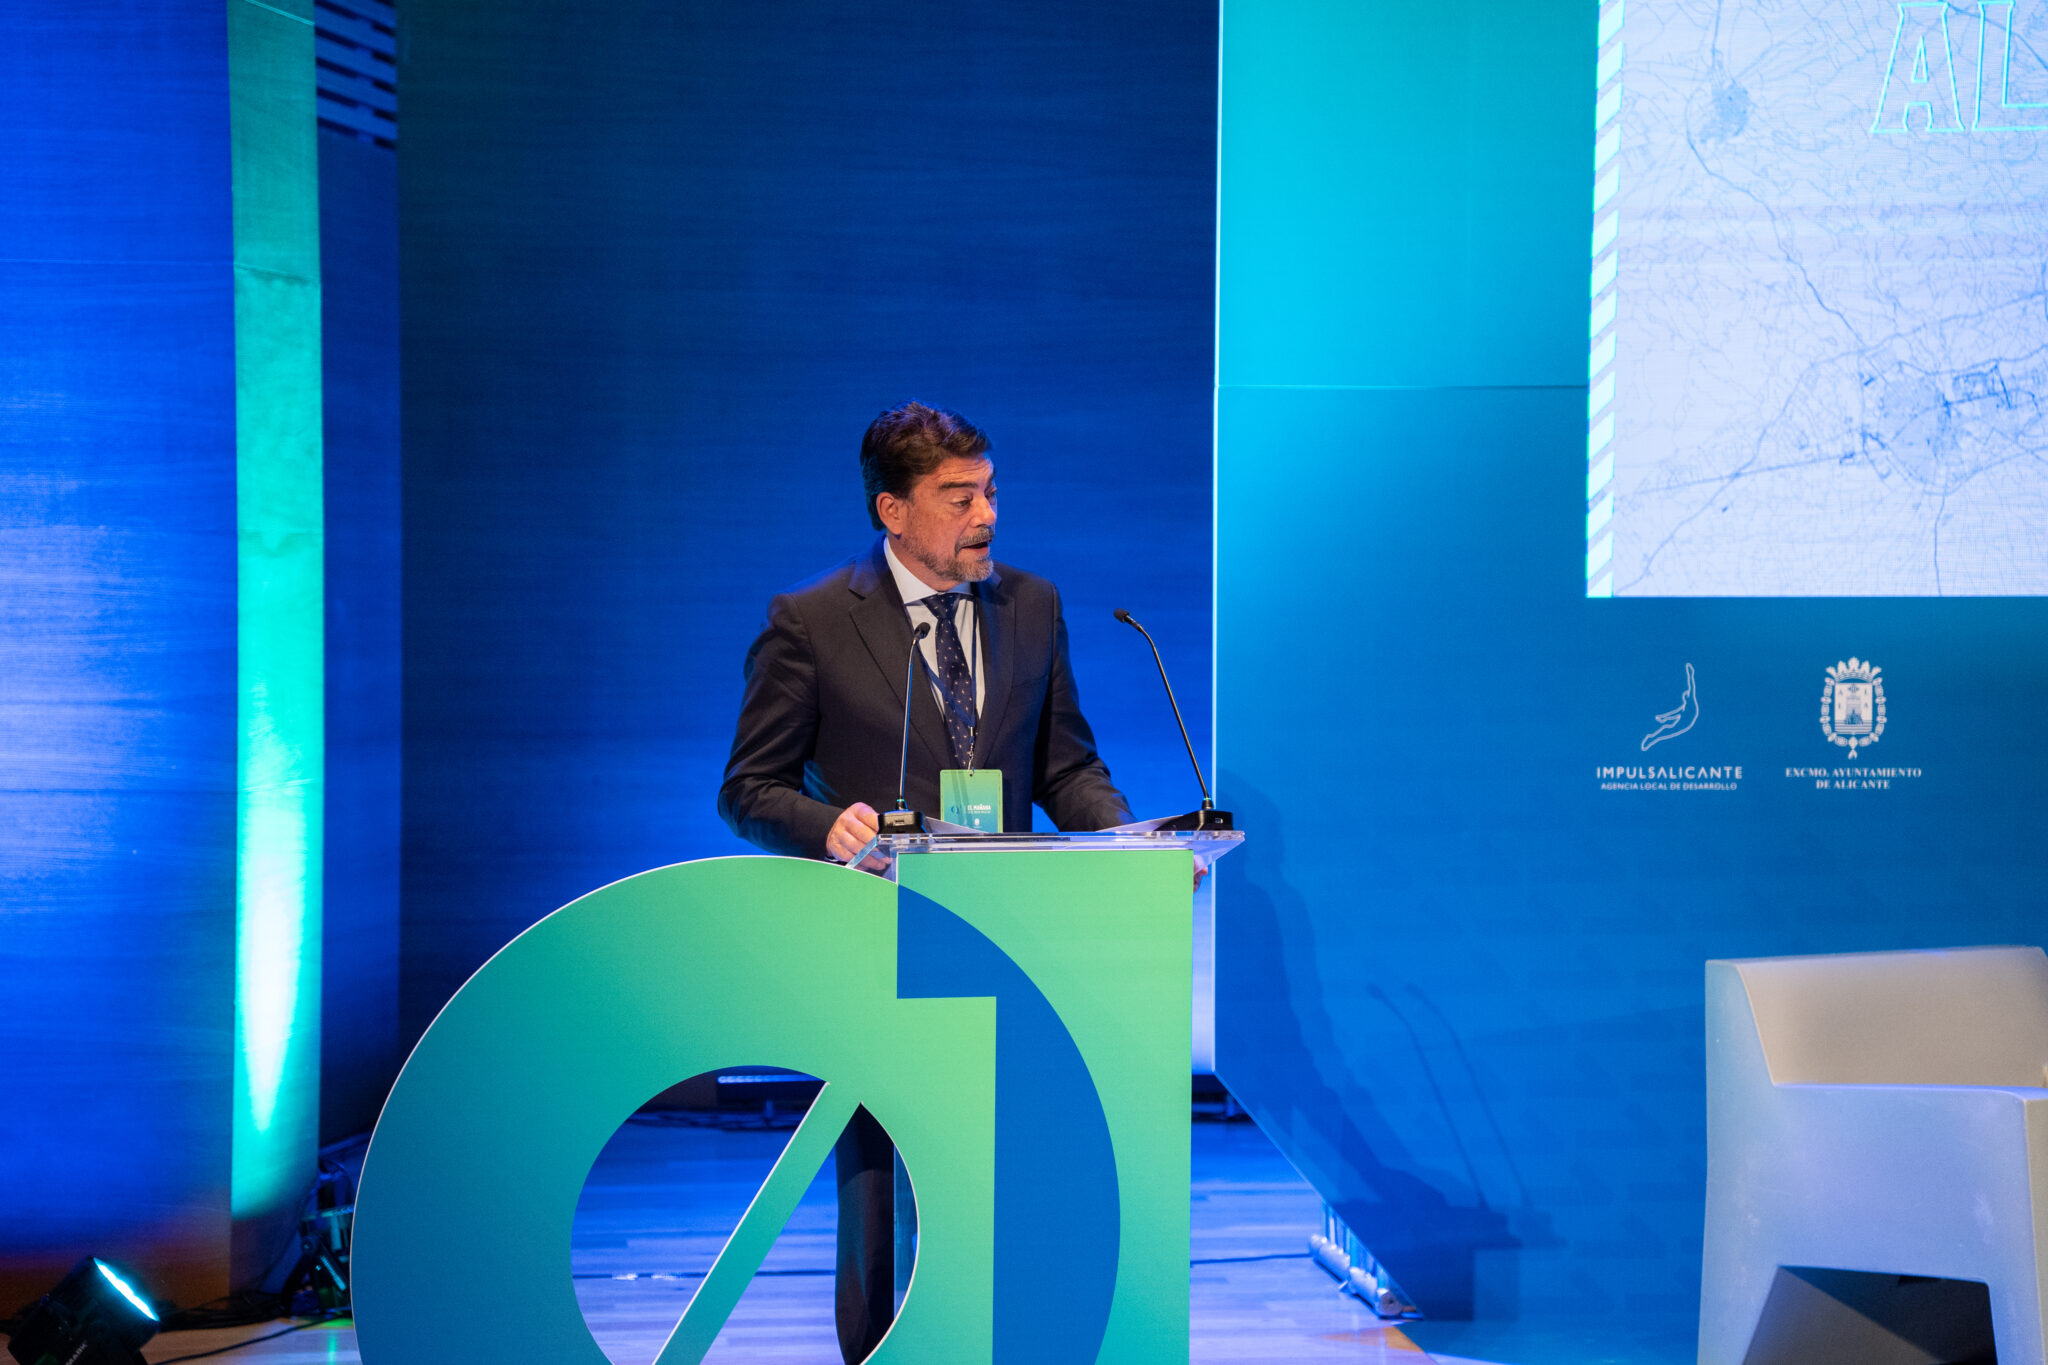 El debate sobre la digitalización y las nuevas tecnologías en la Administración Pública abren el congreso Alicante Futura